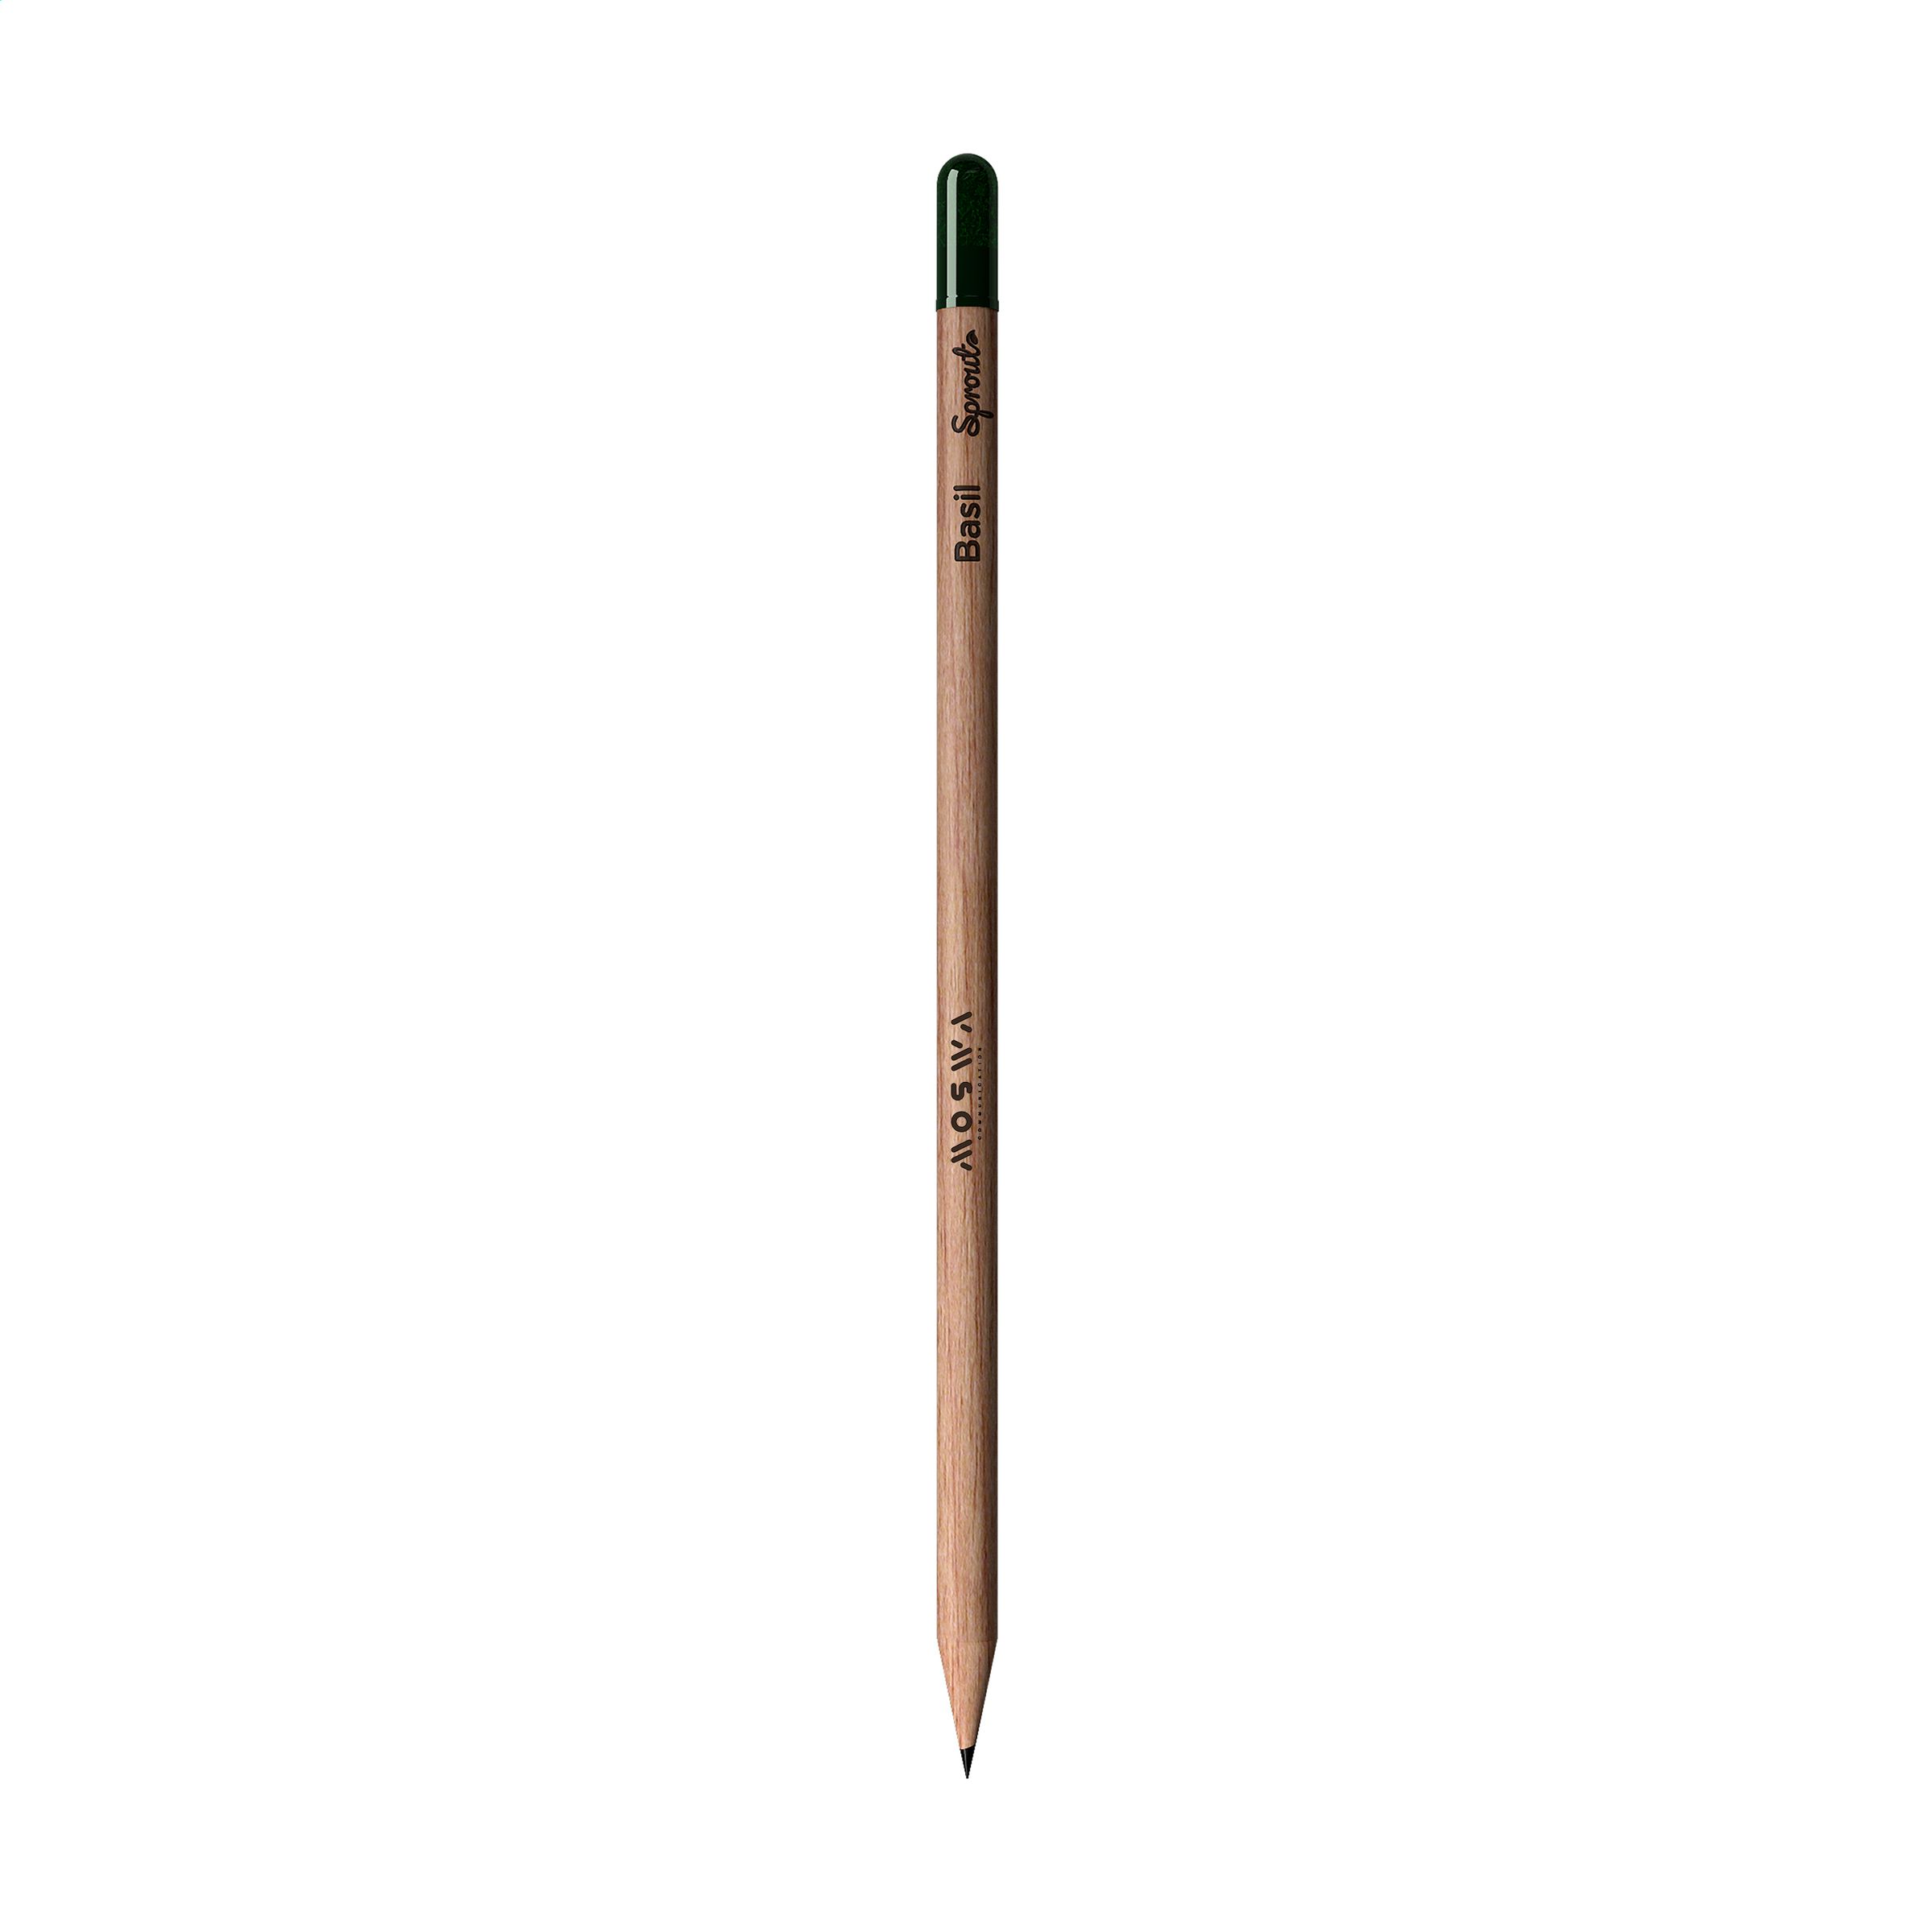 Sproutworld Sharpened Pencil crayon taillé - Zaprinta France